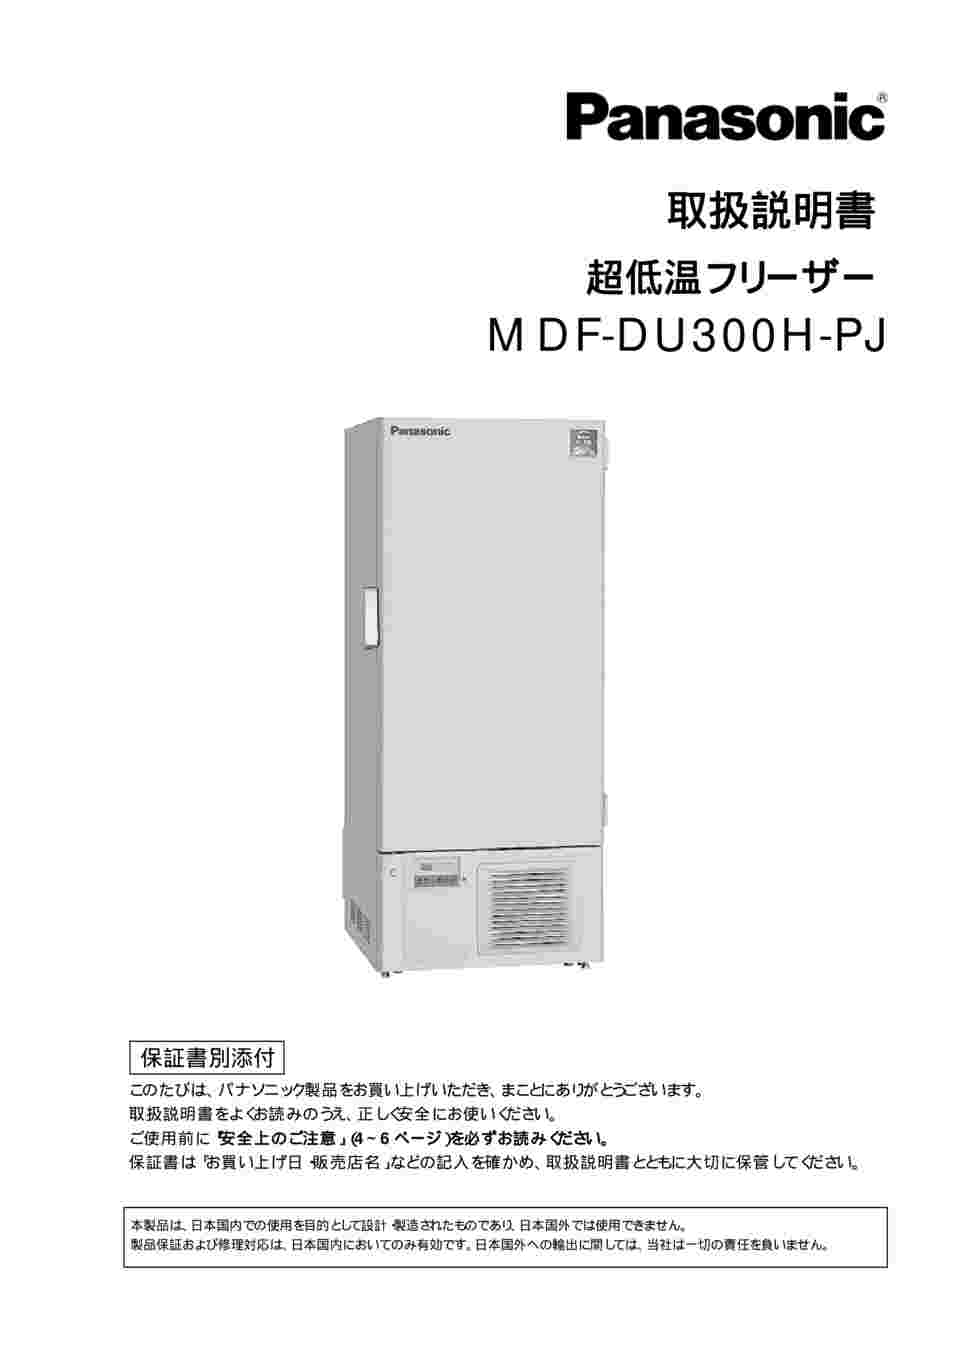 61-9169-59 ノンフロン超低温フリーザー 750×870×1830mm MDF-DU300H-PJ